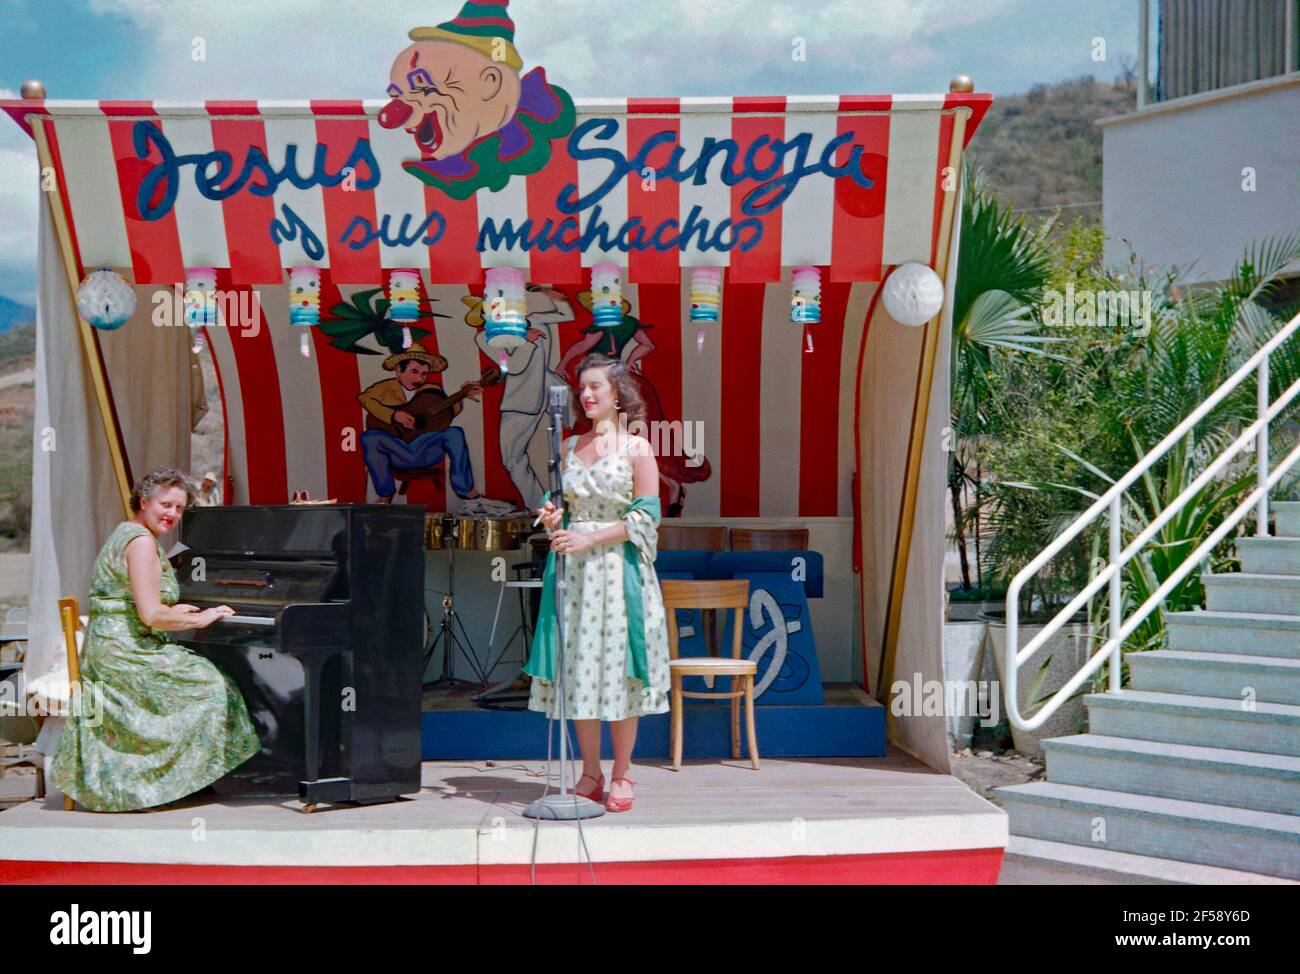 Ein weibliches Musikduo – Sängerin und Pianistin – auf der Bühne im Freien in Venezuela, Südamerika im Jahr 1952. Die Sängerin hält eine Zigarette in der Hand. Die farbenfrohe Kulisse/Baldachin über der Bühne zeigt eine Illustration eines Clowns und hängender Papierlaternen. Es fördert auch die Hauptattraktion, ‘Jesús Sanoja und seine Jungen’. Jesús Chucho Sanoja (1926–1998) war ein venezolanischer Musiker, Pianist, Komponist, Musikdirektor und Arrangeur. Dieses Bild ist von einem alten Amateur 35mm Farbtransparenz - ein Vintage 1950s Foto. Stockfoto